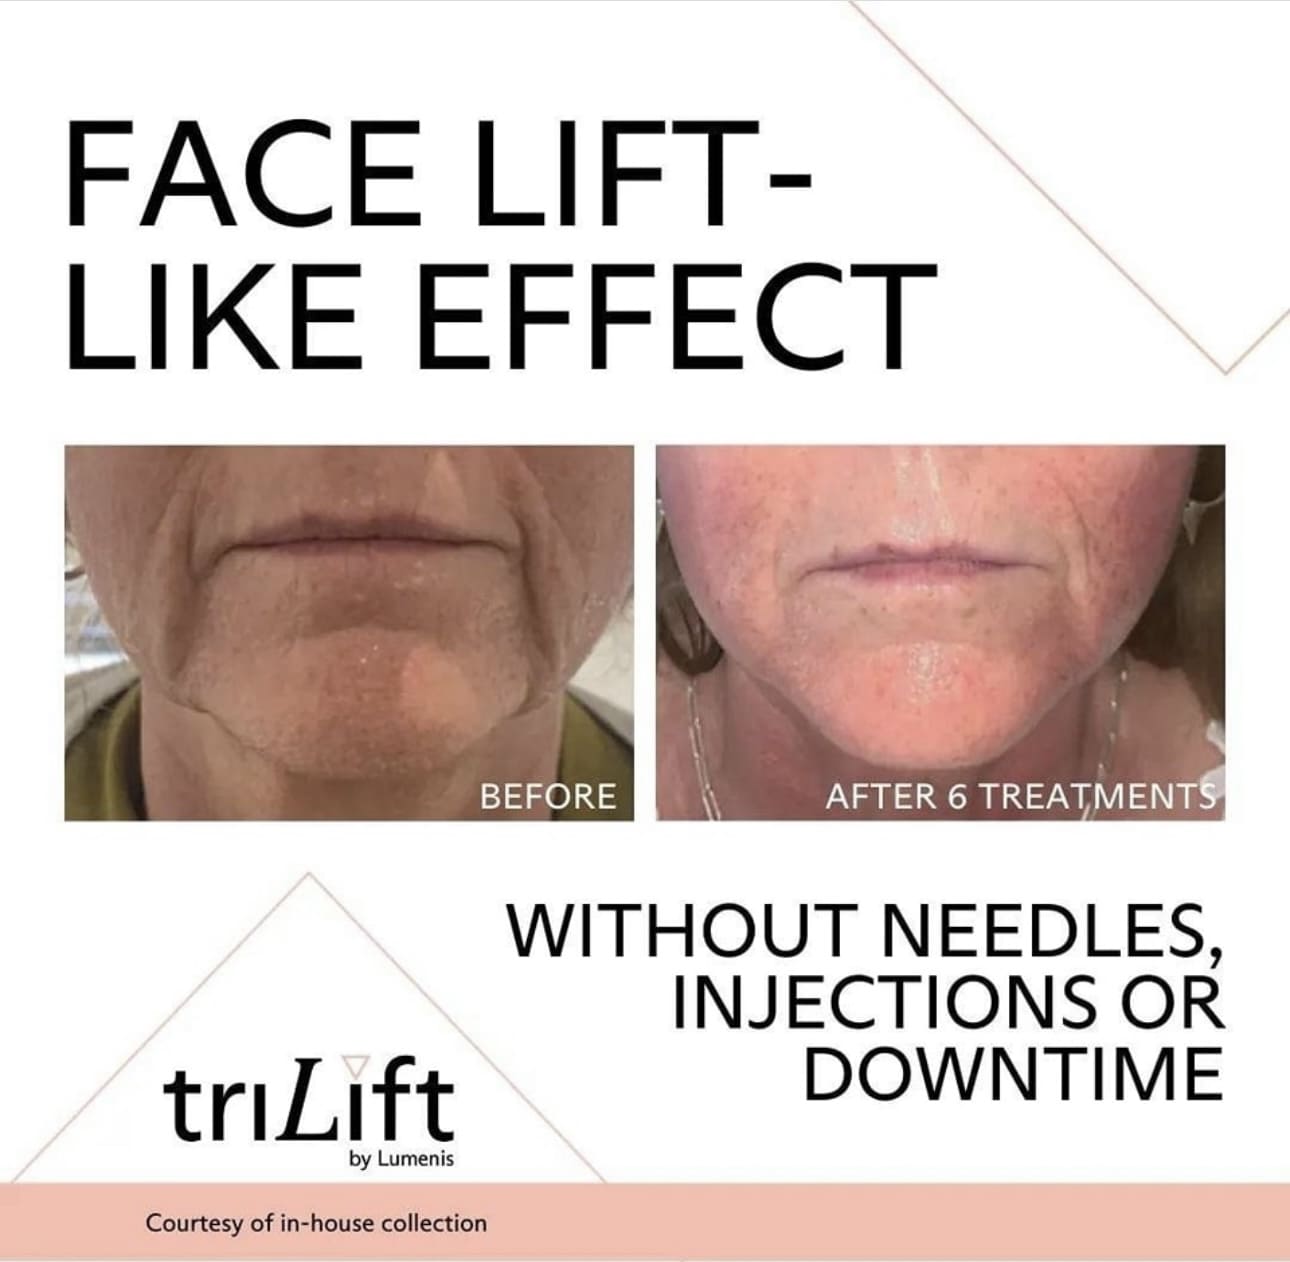 Face Lift Like Effect - TriLift